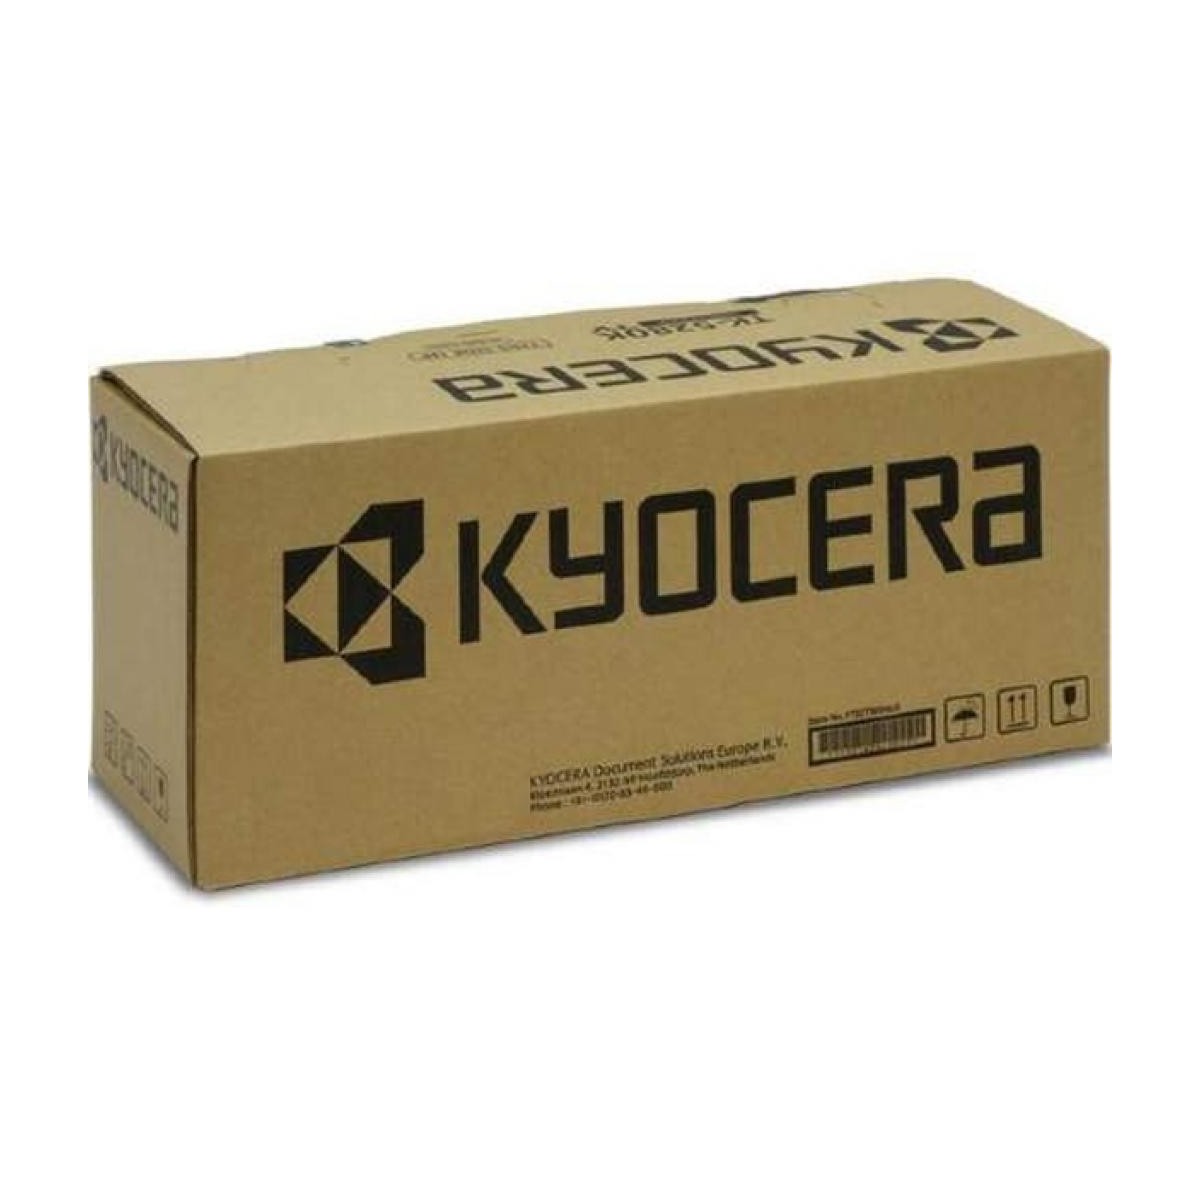 Kyocera DK-475 - Original - Kyocera - FS-6025MFP - FS-6025MFP/B - FS-6030MFP - FS-6525MFP - FS-6530MFP - 1 pc(s) - 300000 pages 